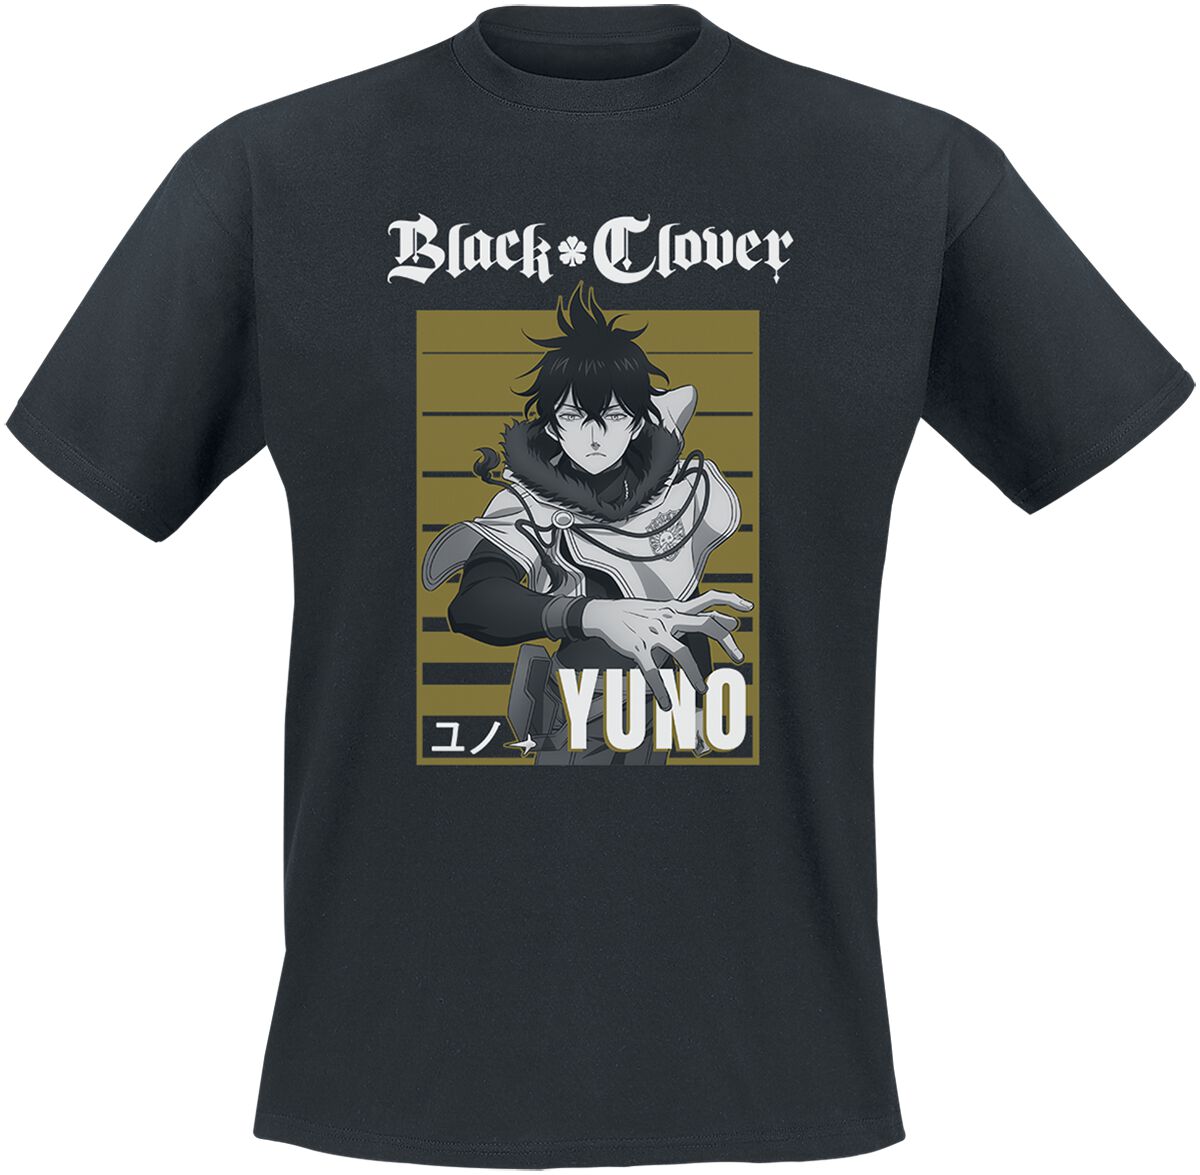 Black Clover - Anime T-Shirt - Yuno - S bis XL - für Männer - Größe XL - schwarz  - Lizenzierter Fanartikel